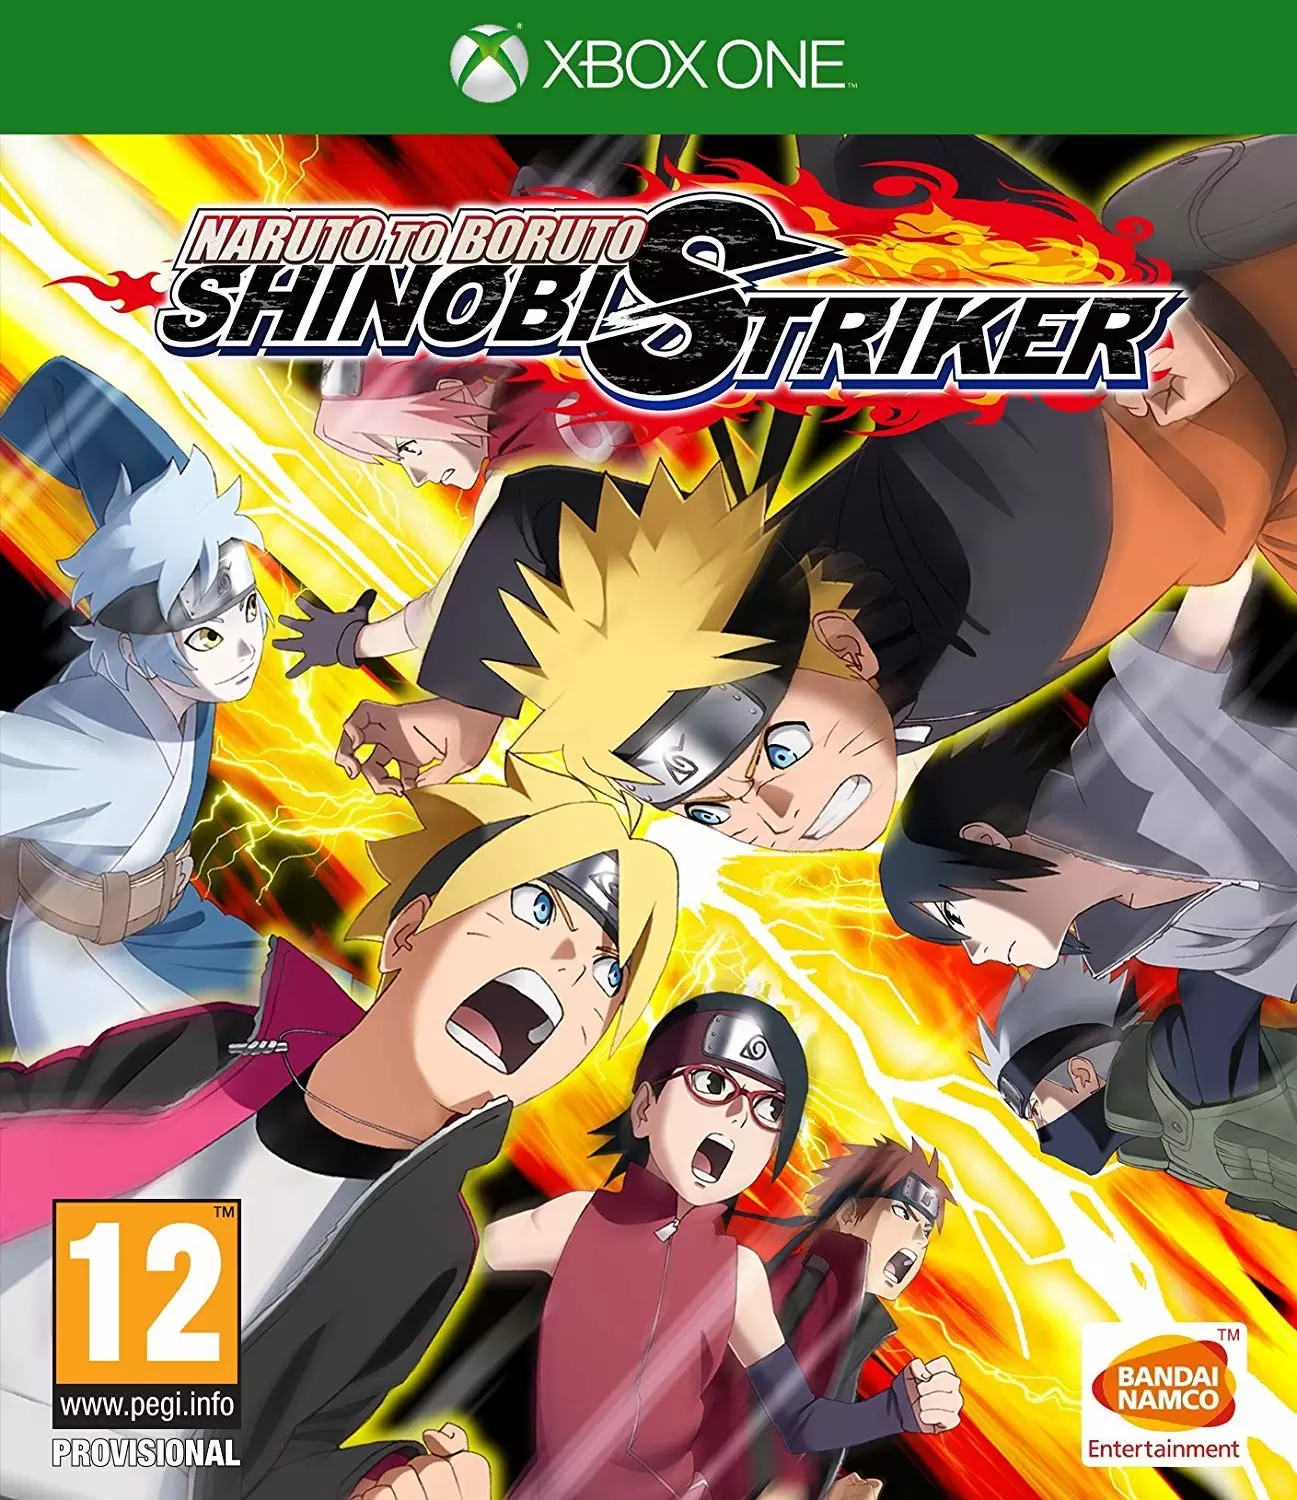 XBOX One Games - Naruto to Boruto: Shinobi Striker